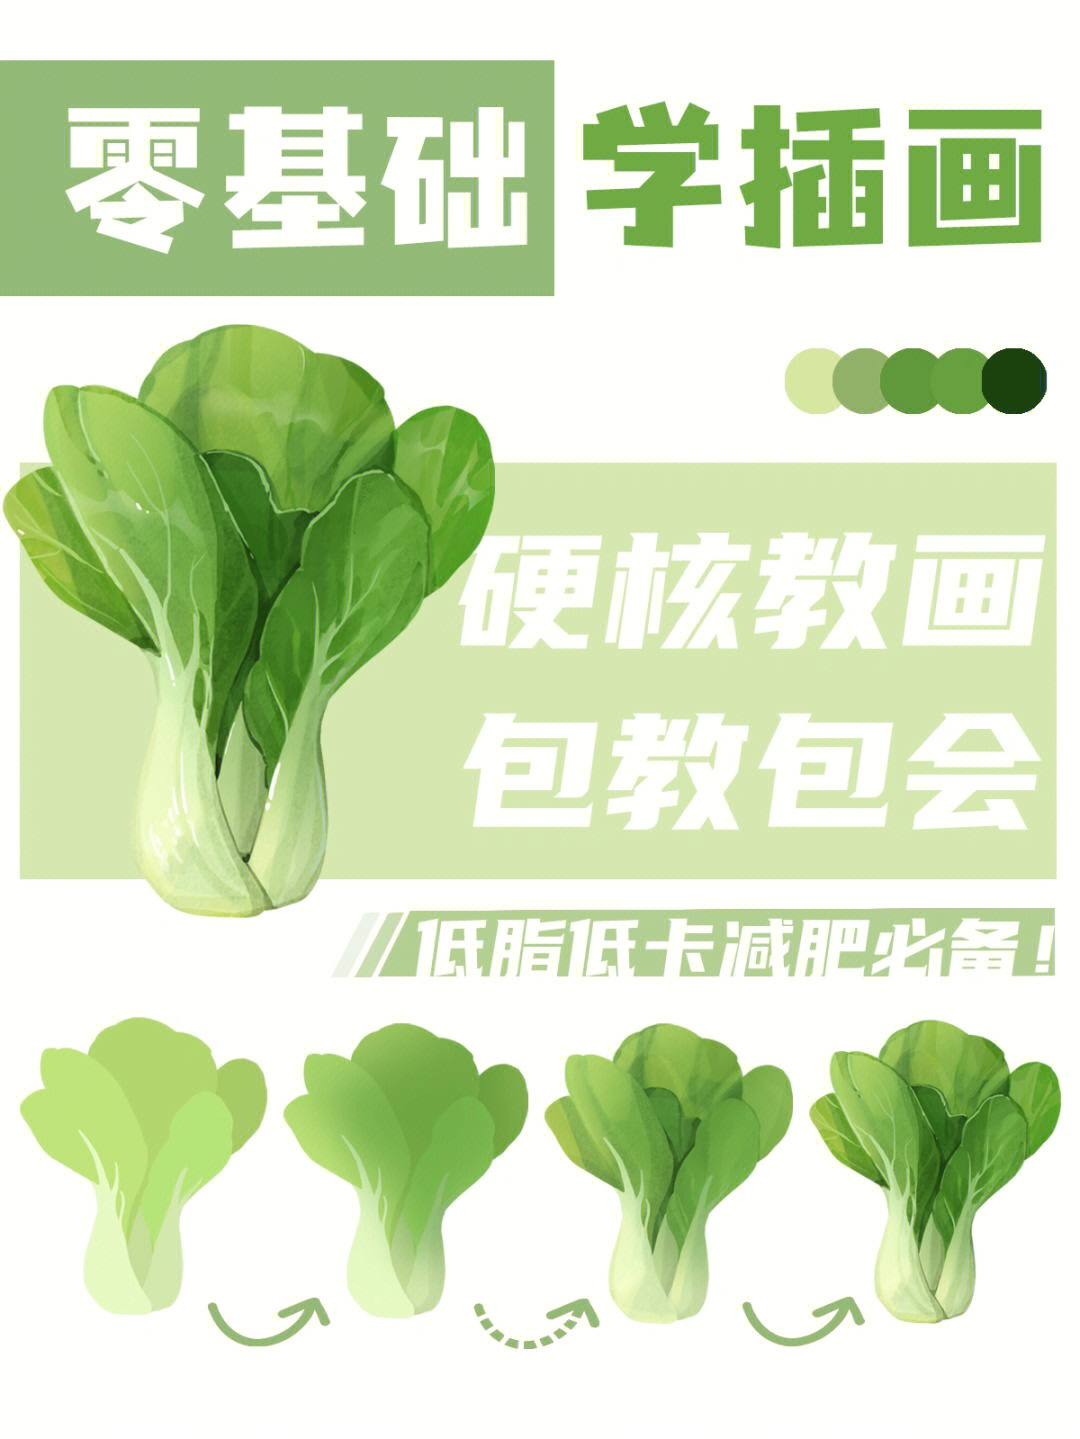 上海青菜图片 卡通画图片